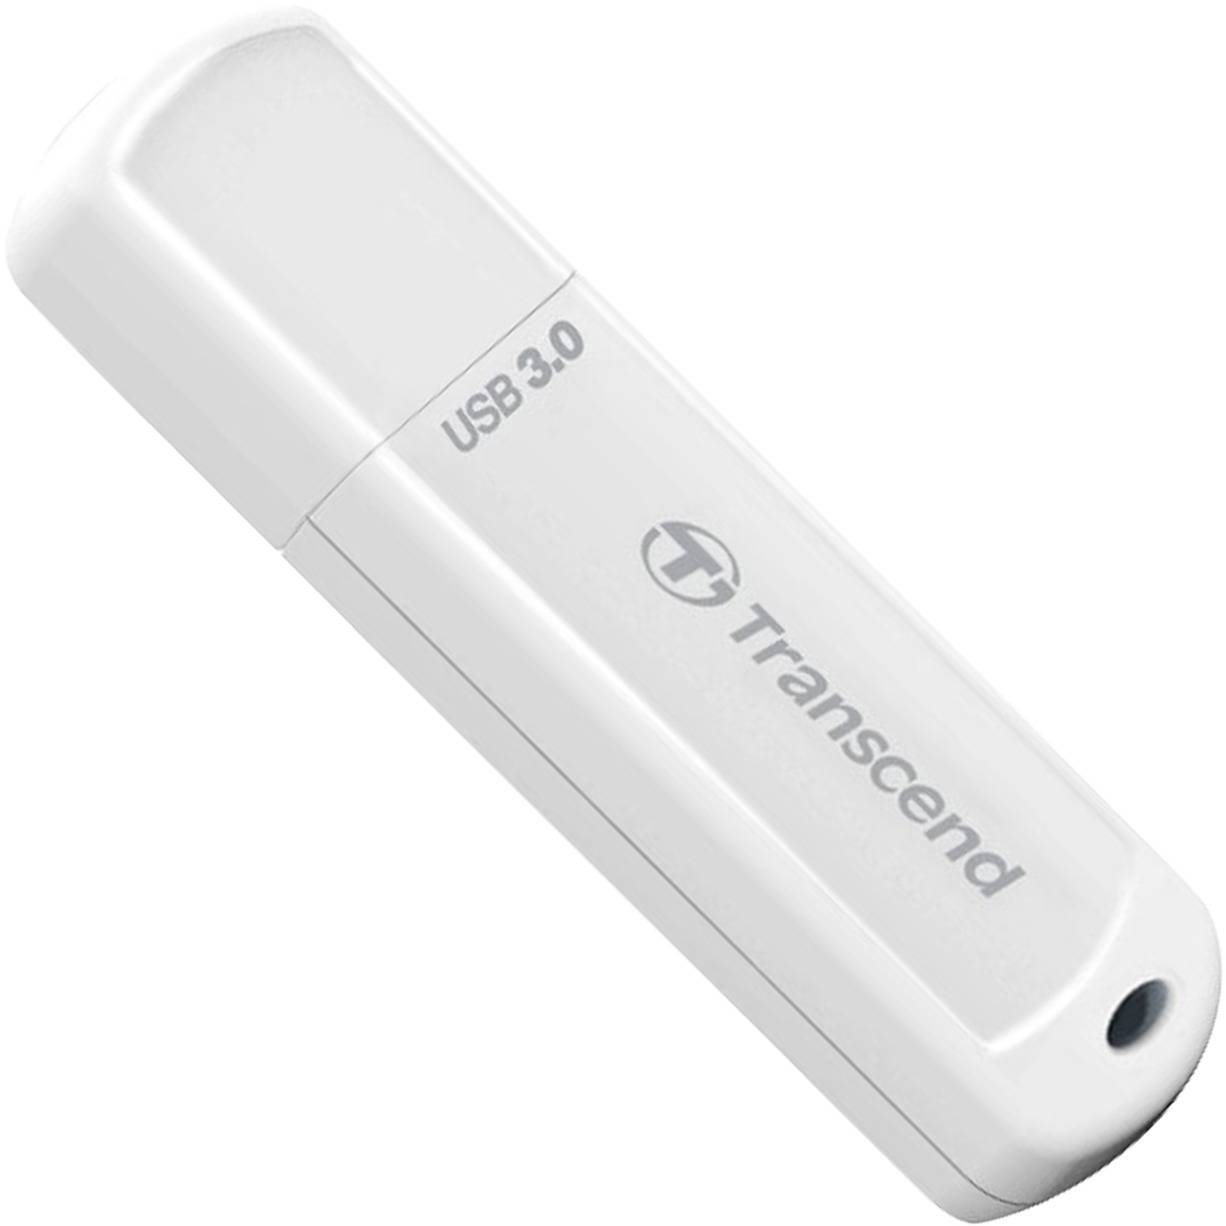 Image of Alternate - JetFlash 730 32 GB, USB-Stick online einkaufen bei Alternate